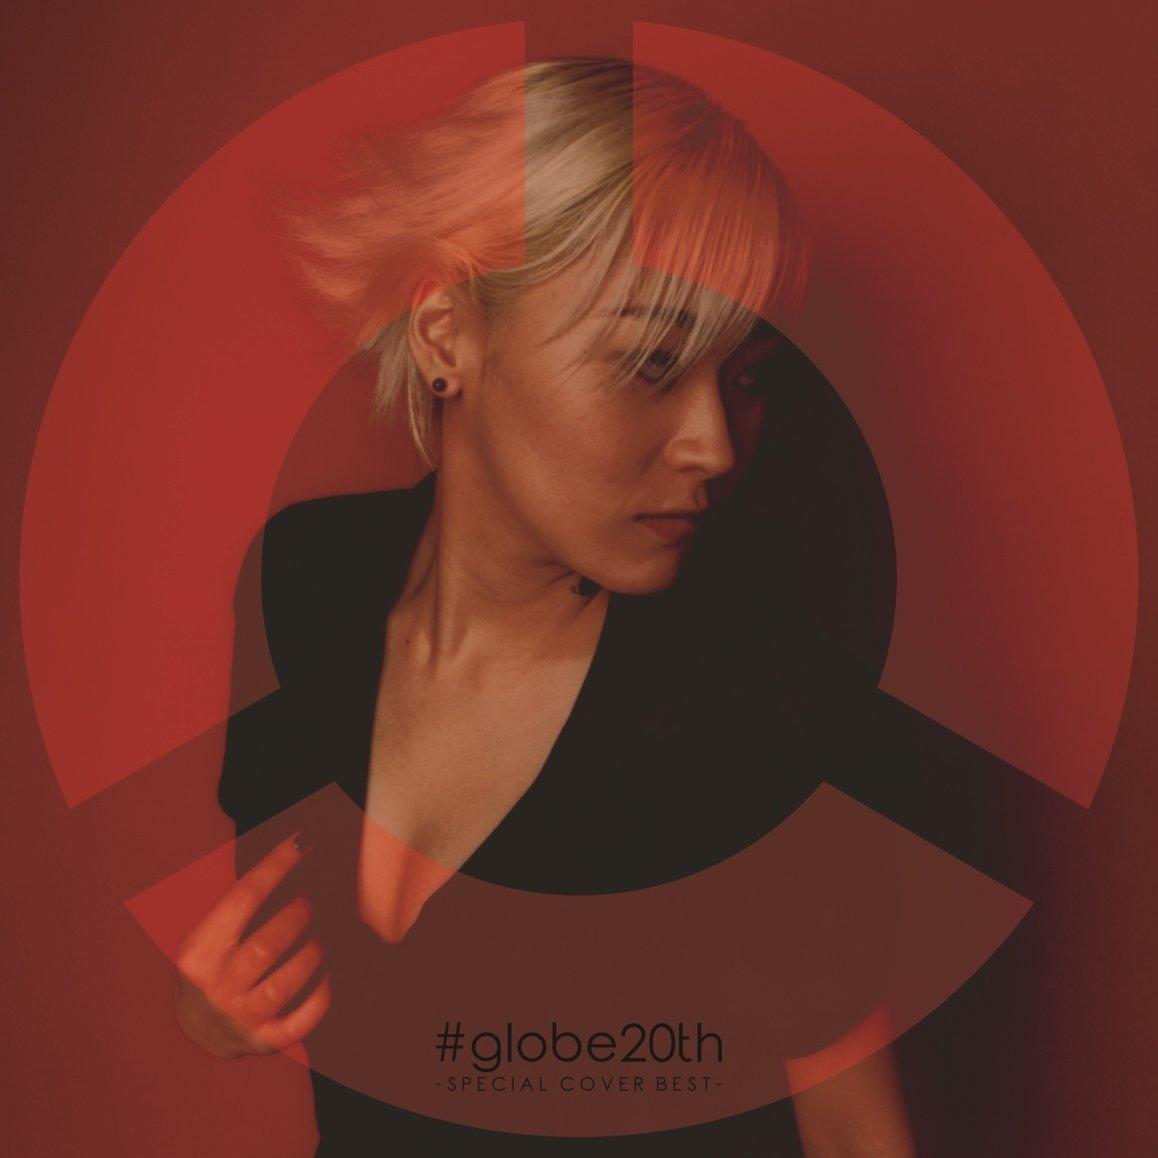 O[uXyVJo[Ao (V.A.)/#globe20th -SPECIAL COVER BEST- AL(2g) yCDz GCxbNXEG^eCg